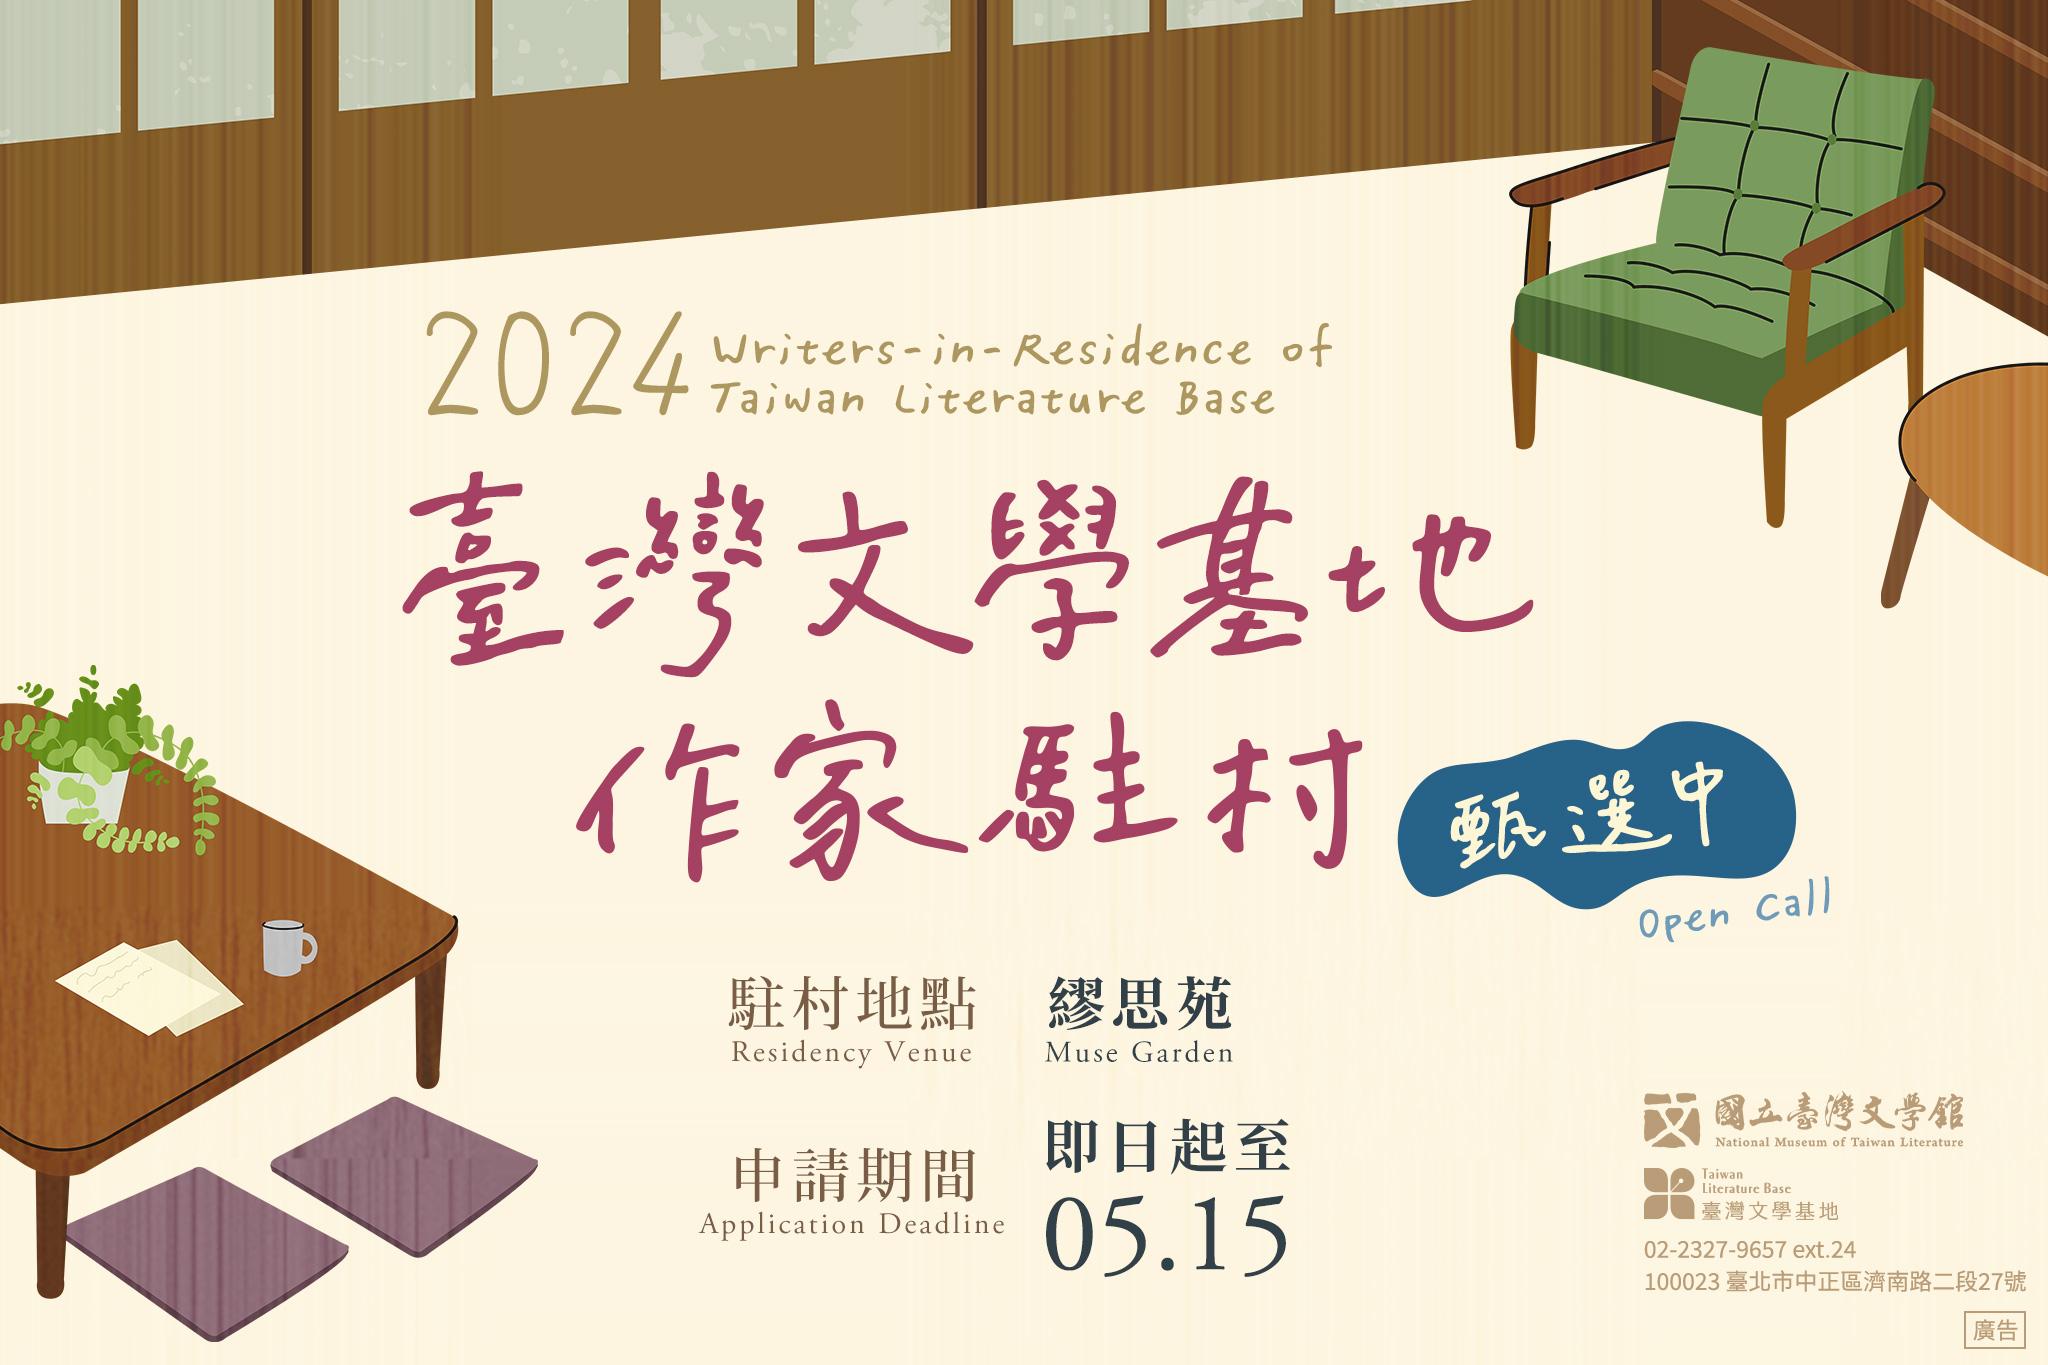 2024 台湾文学ベース ライター・イン・レジデンス 募集開催